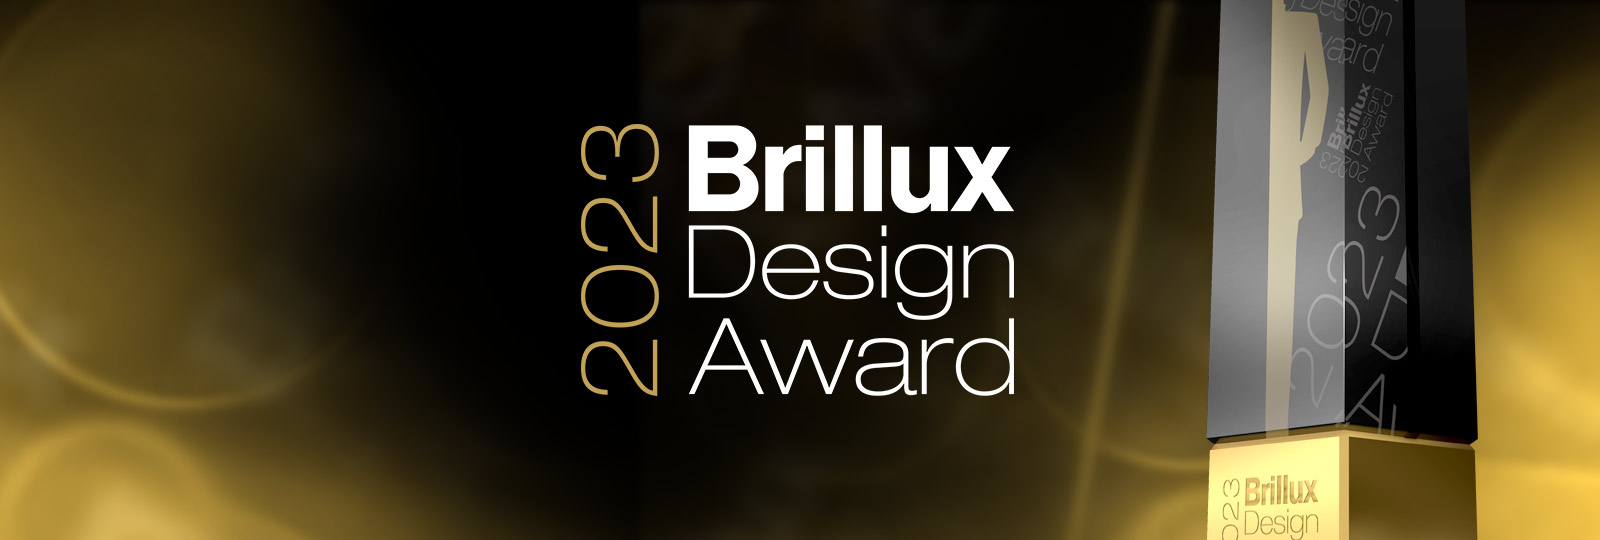 Brillux Design Award